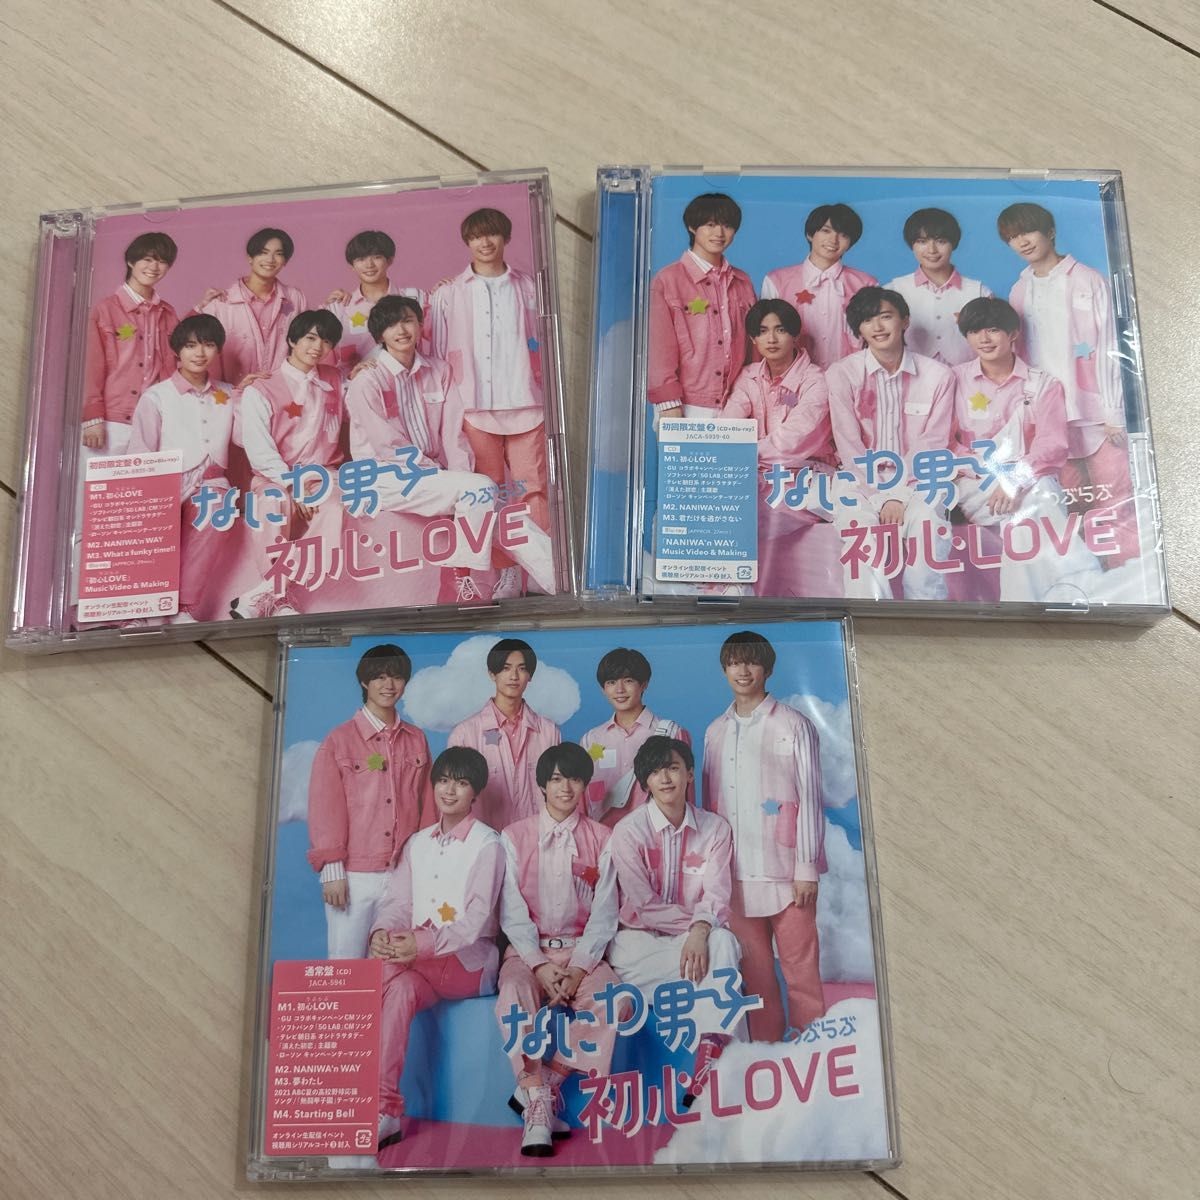 なにわ男子 初心LOVE 3形態 初回限定盤1 初回限定盤2 通常盤 BluRay 